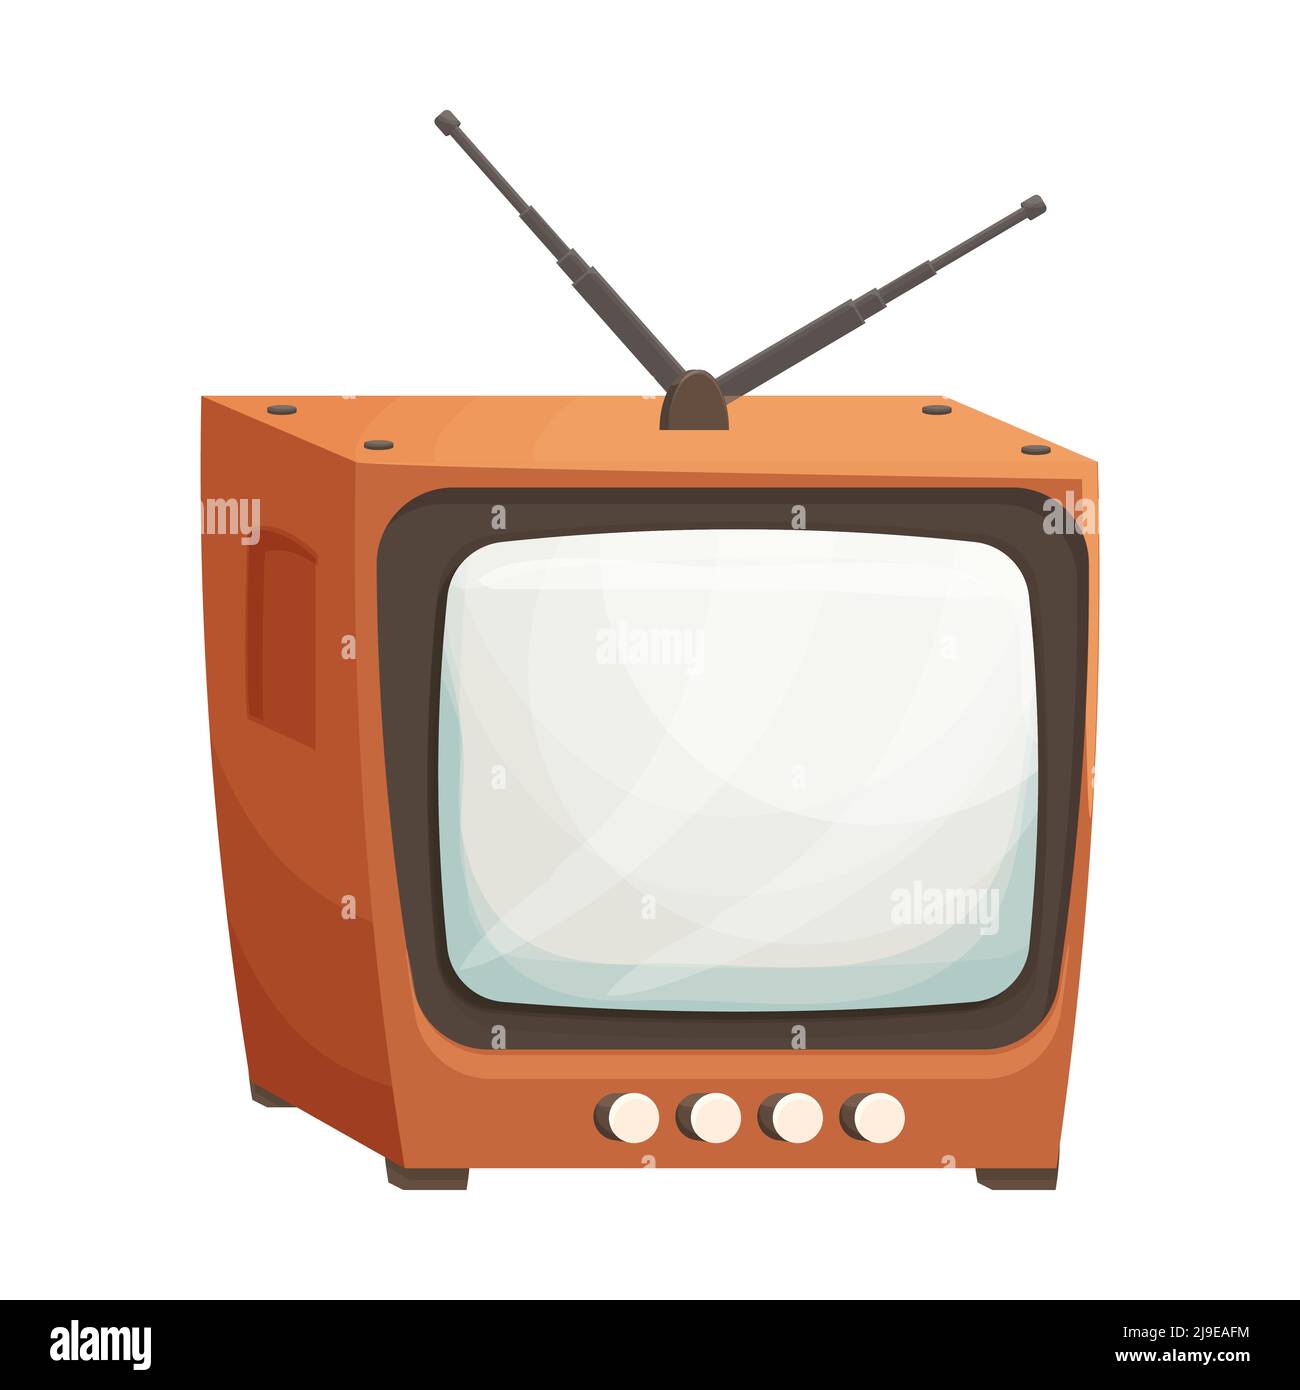 TV box retrò con antenna in stile cartoon isolato su sfondo bianco.  Televisore vecchio analogico, dettagliato con schermo e pulsanti.  Illustrazione vettoriale Immagine e Vettoriale - Alamy